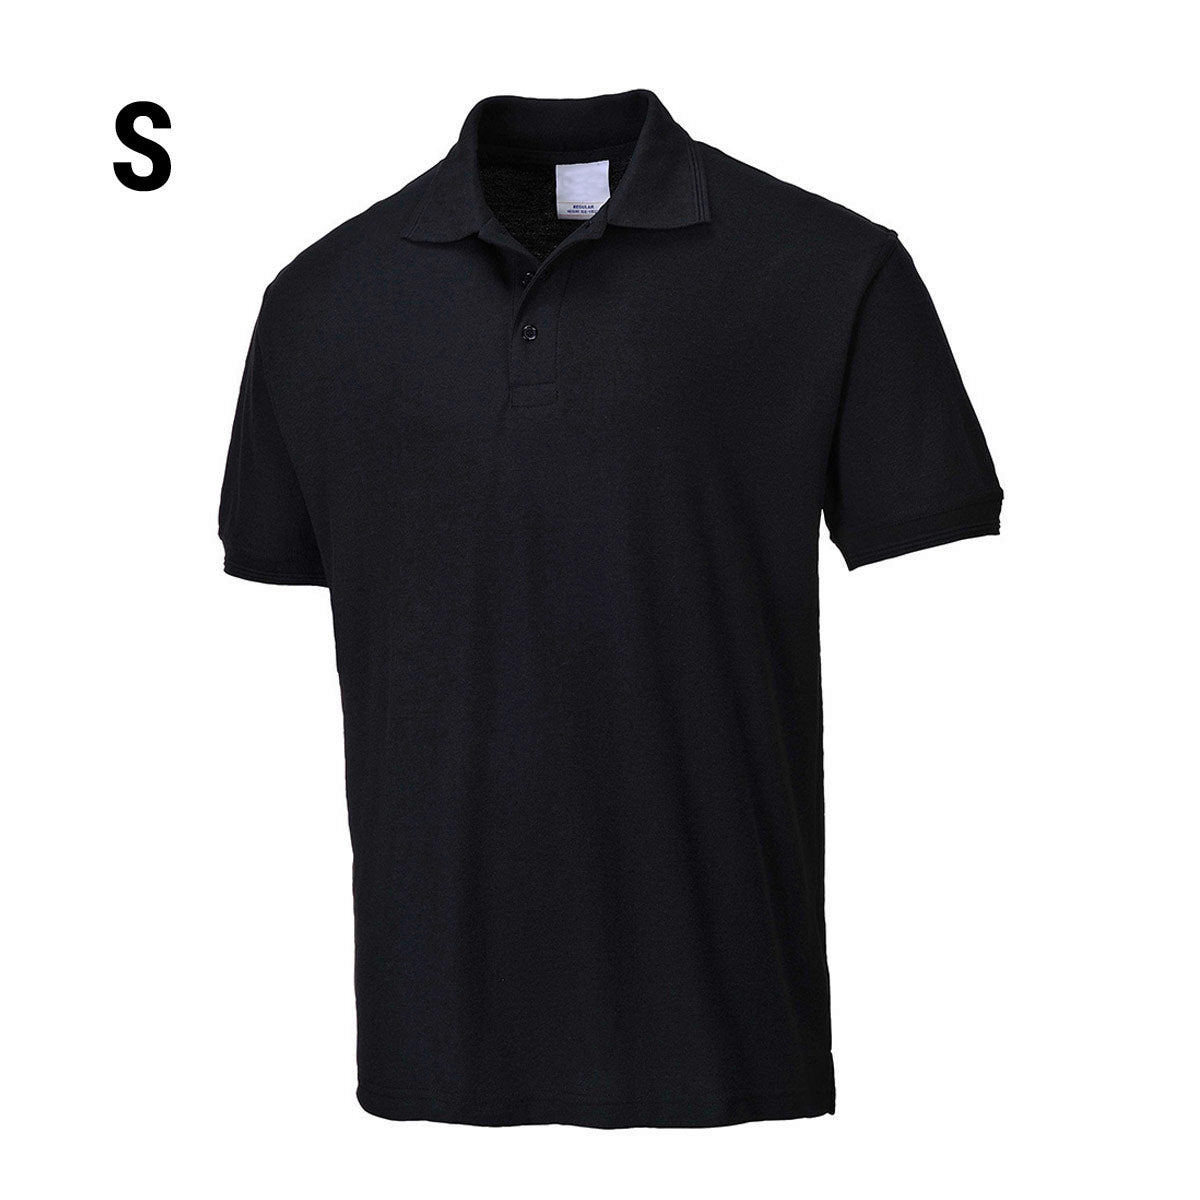 Poloskjorte for menn - Svart - Størrelse: S